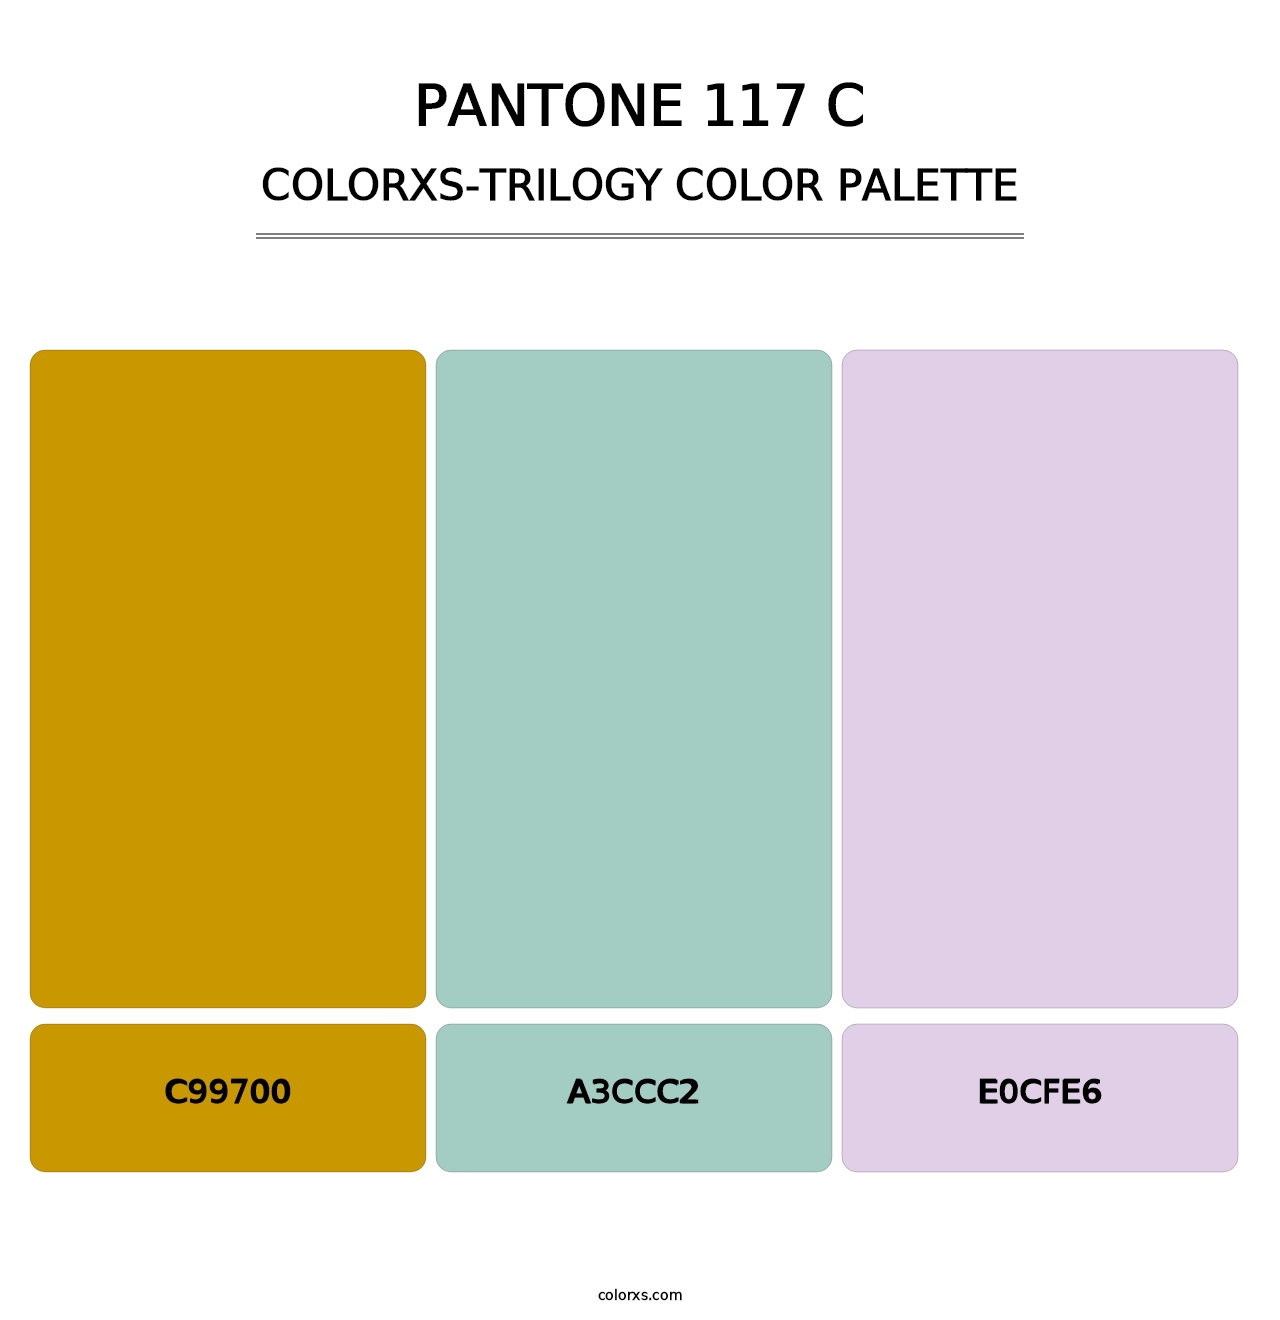 PANTONE 117 C - Colorxs Trilogy Palette